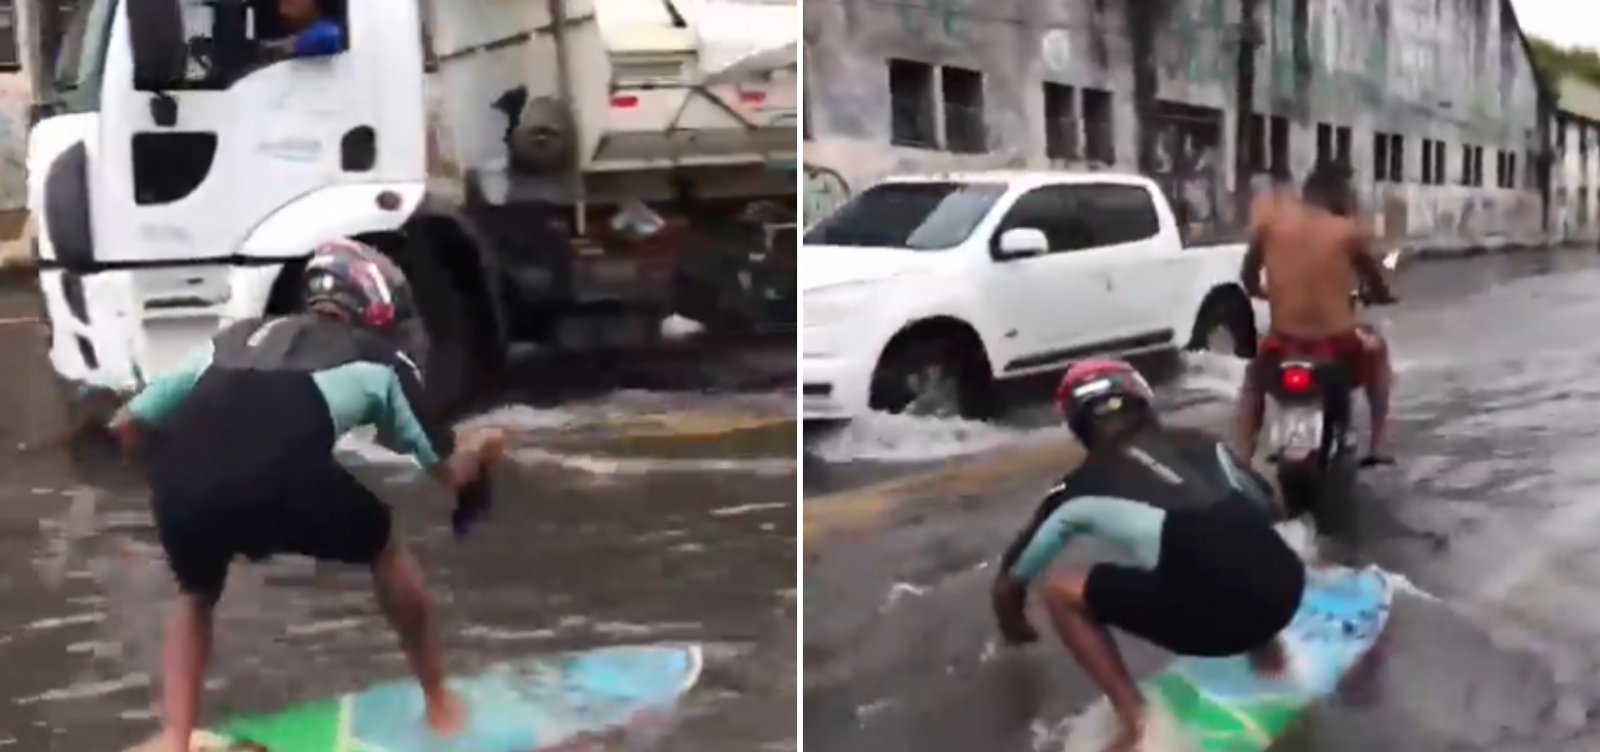 De prancha a motos aquáticas, população "se aventura" em ruas alagadas de Salvador